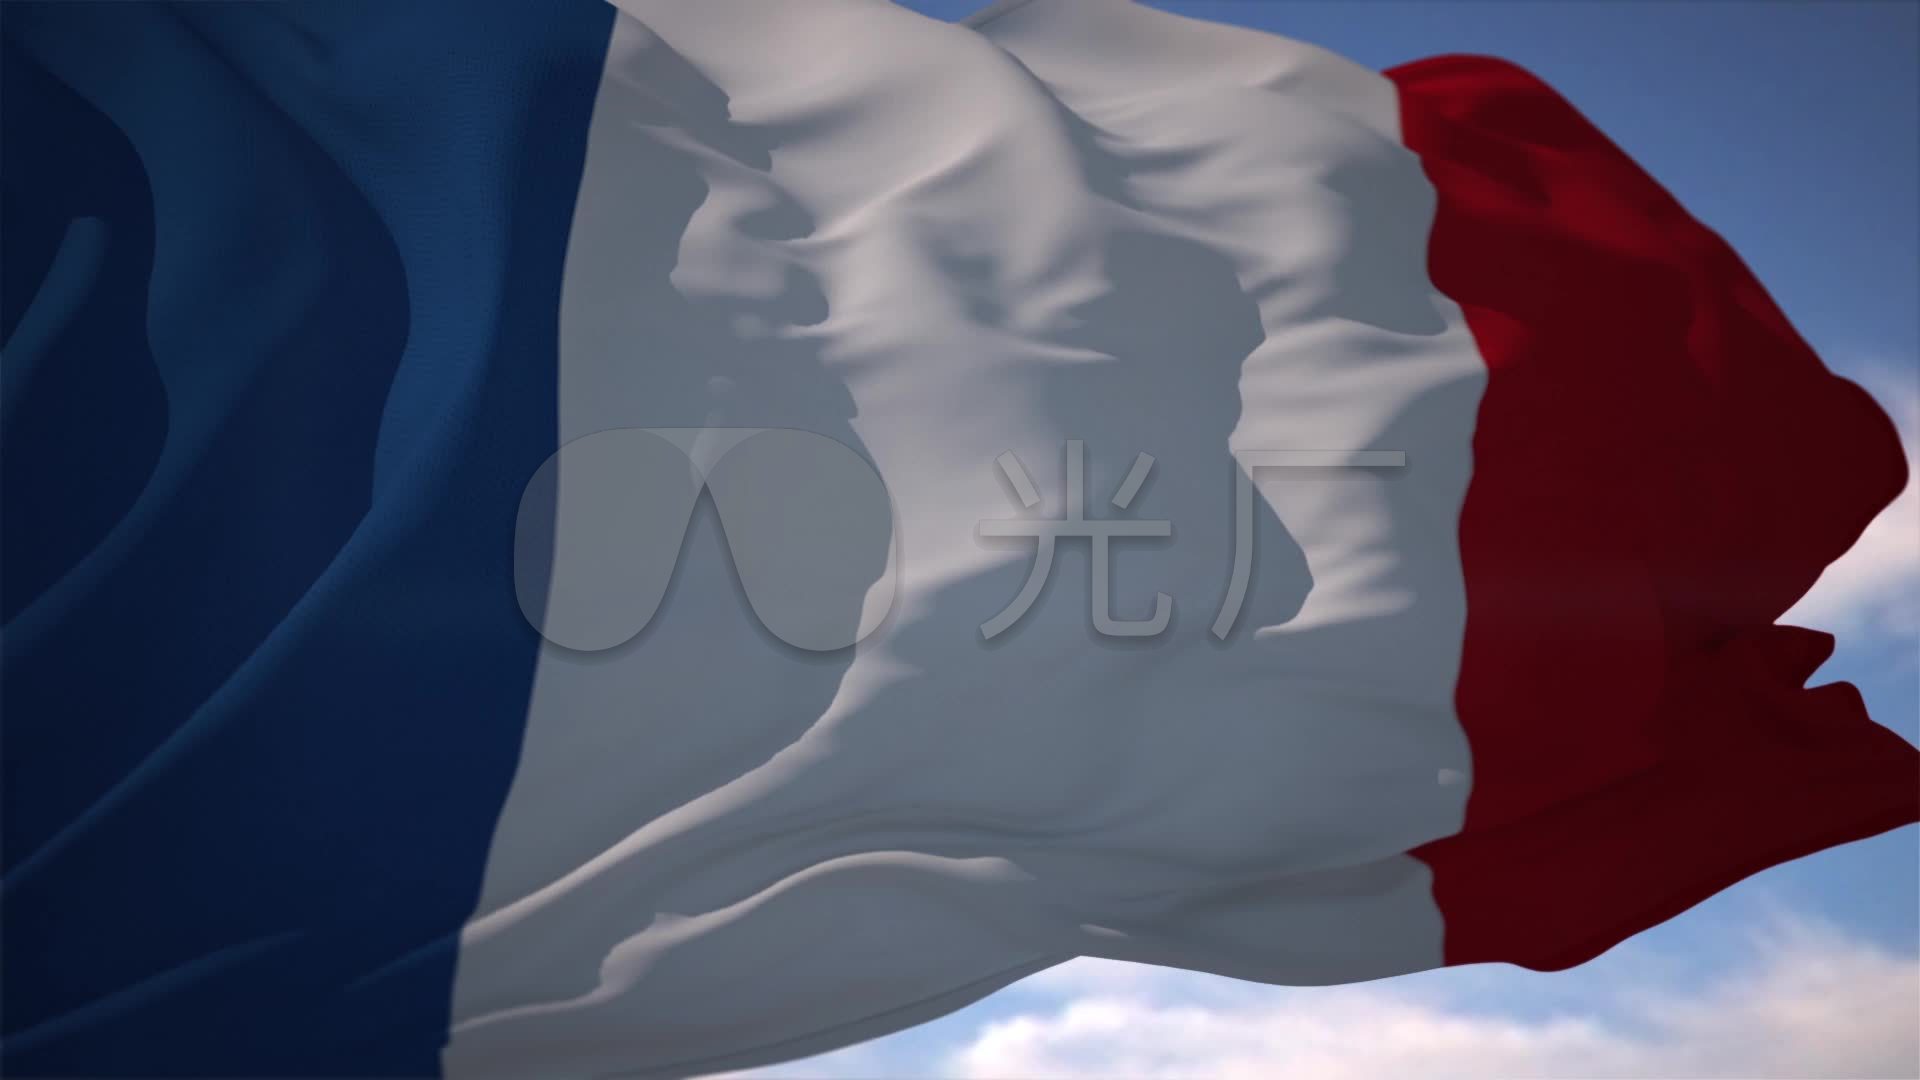 超赞飘动法国法兰西国旗素材